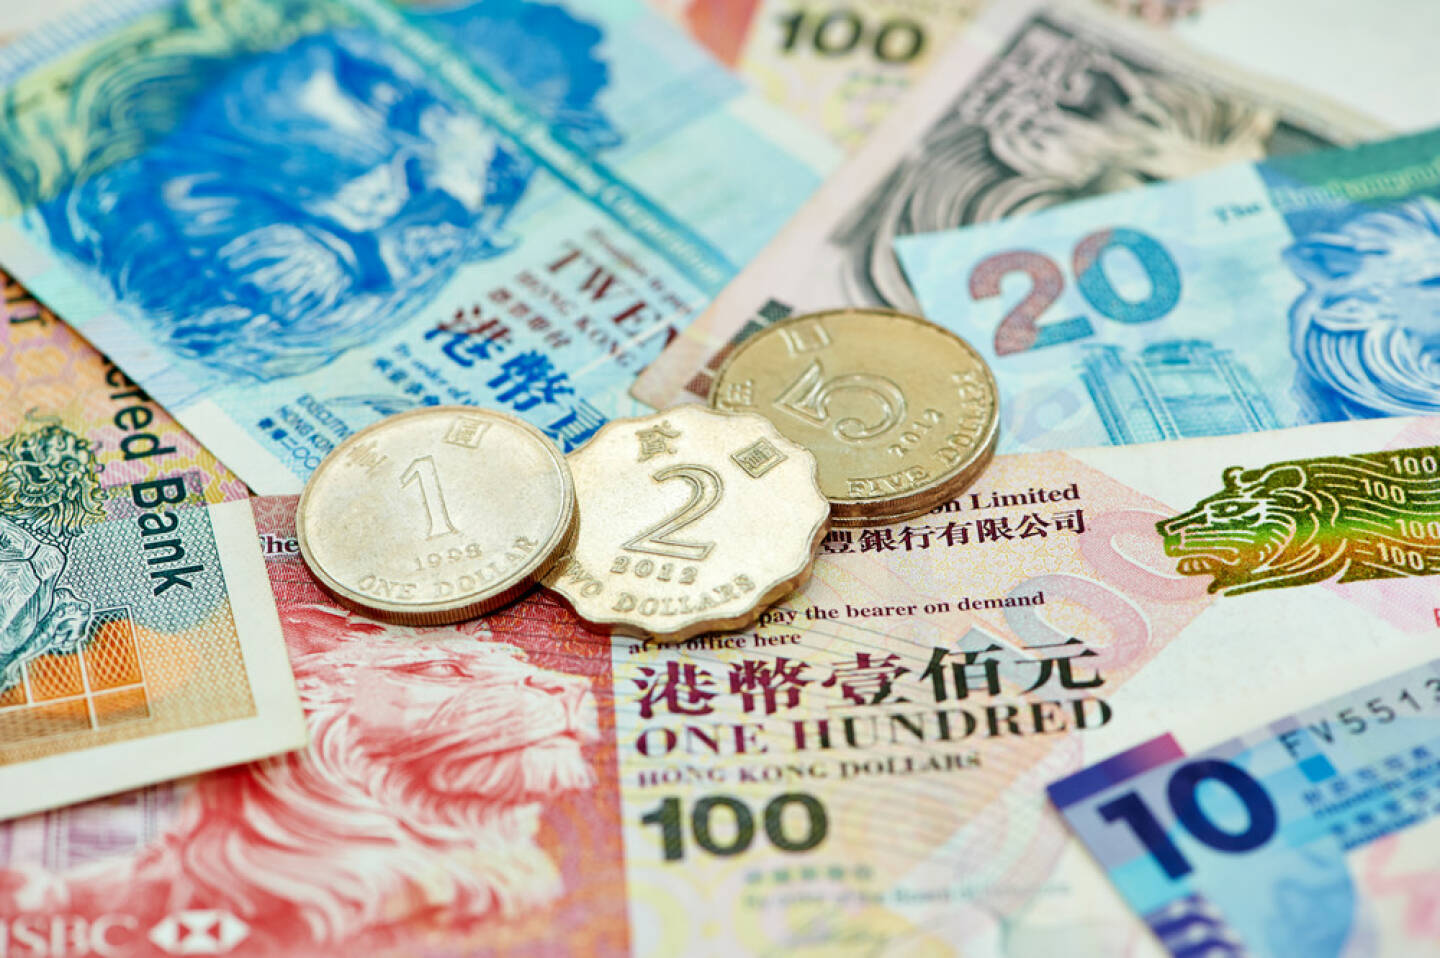 China, Renmimbi, Yuan http://www.shutterstock.com/de/pic-140618884/stock-photo-set-of-chinese-currency-money-yuan-renminbi-close-up.html (Bild: www.shutterstock.com)